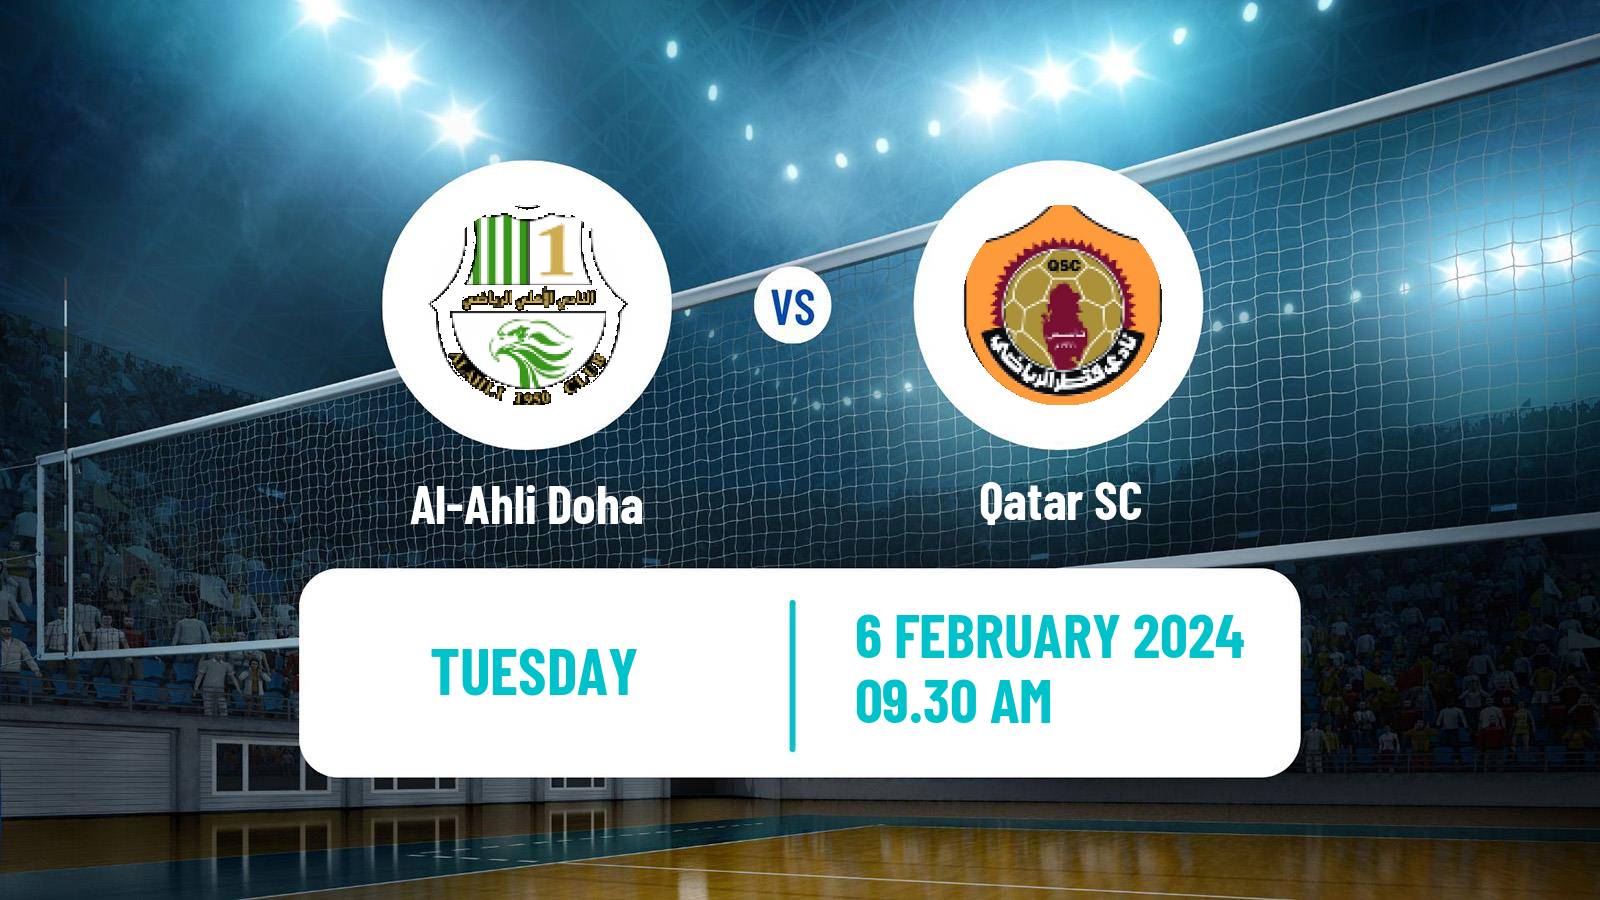 Volleyball Qatar Volleyball League Al-Ahli Doha - Qatar SC